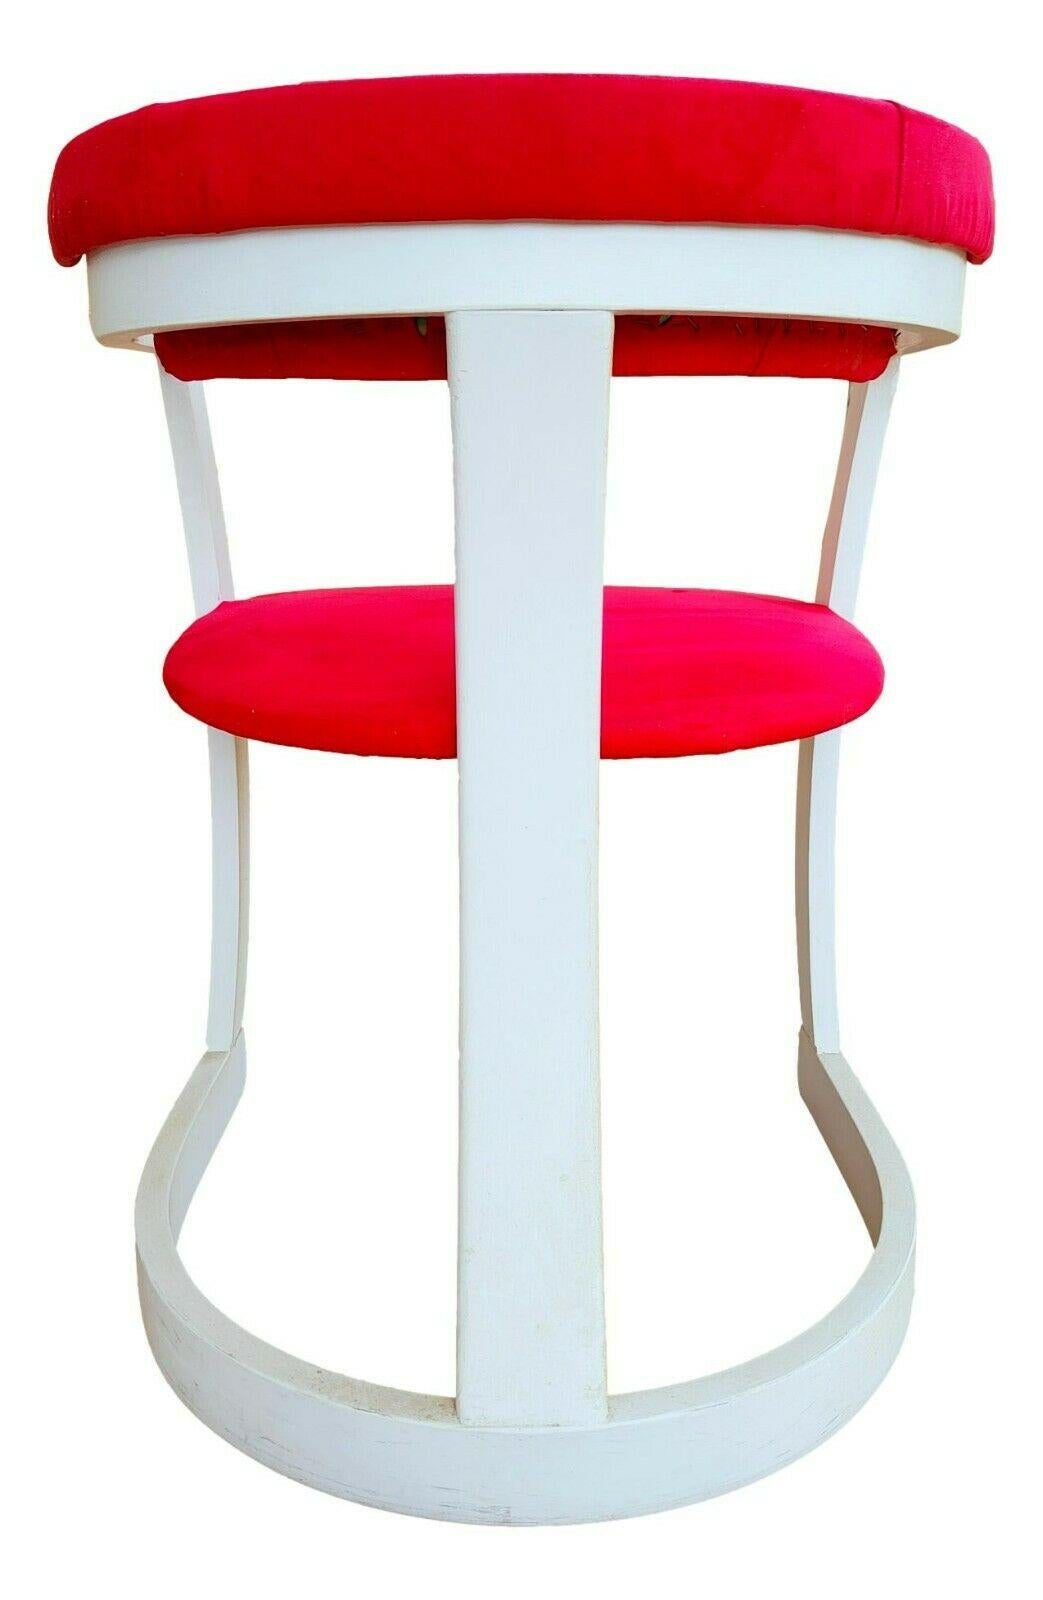 lot de quatre chaises design, originales des années 70, en bois dans le style de Willy Rizzo

ils mesurent 73 cm de hauteur, 55 cm de largeur, 50 cm de profondeur et 43 cm de hauteur du siège par rapport au sol

En très bon état, comme le